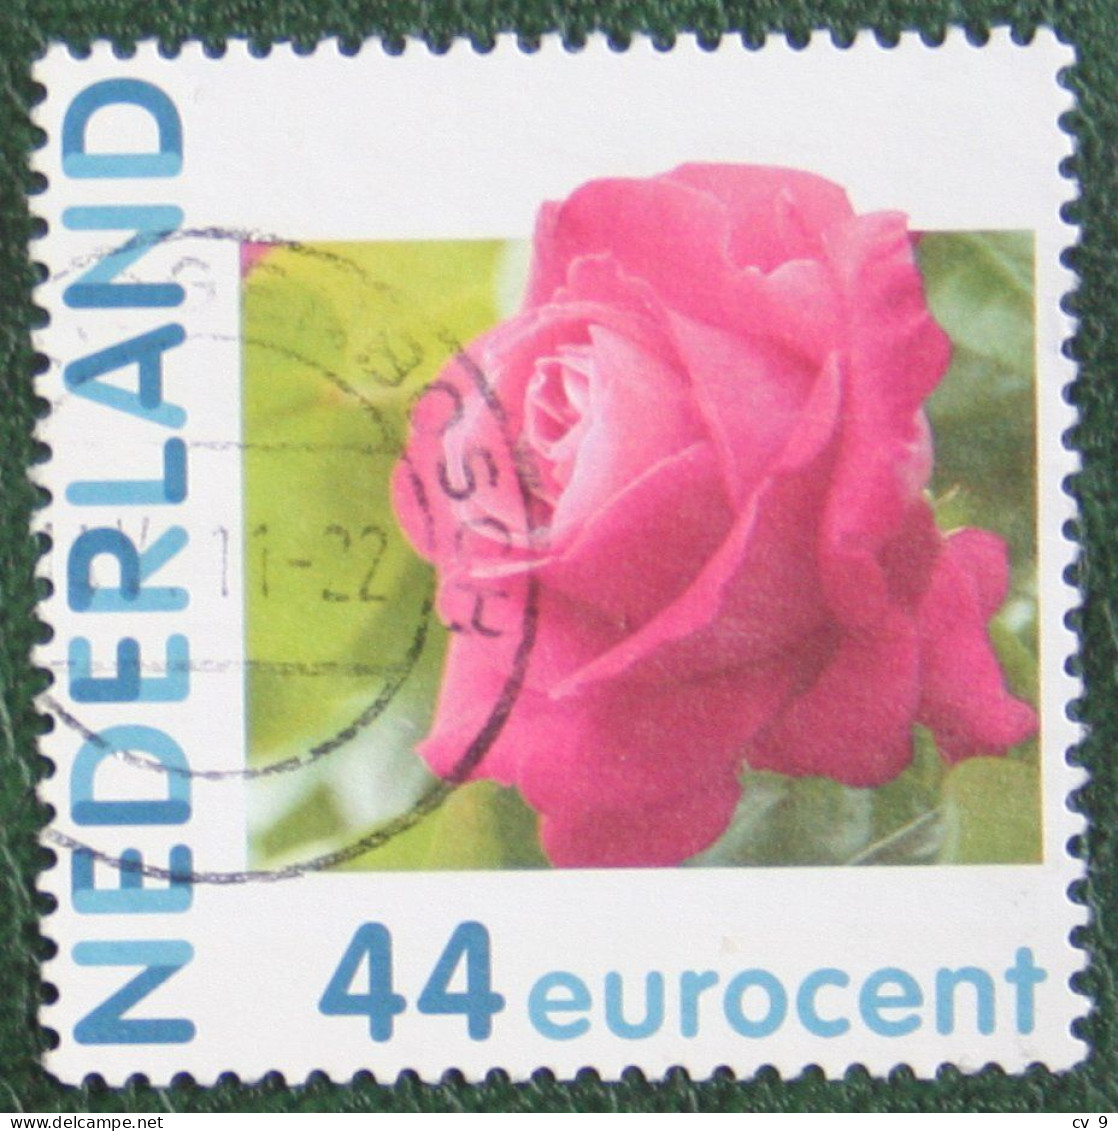 HALLMARK Rose Roos Flower Fleur Blumen Persoonlijke Zegel NVPH 2682 Gestempeld / USED / Oblitere NEDERLAND / NIEDERLANDE - Personnalized Stamps